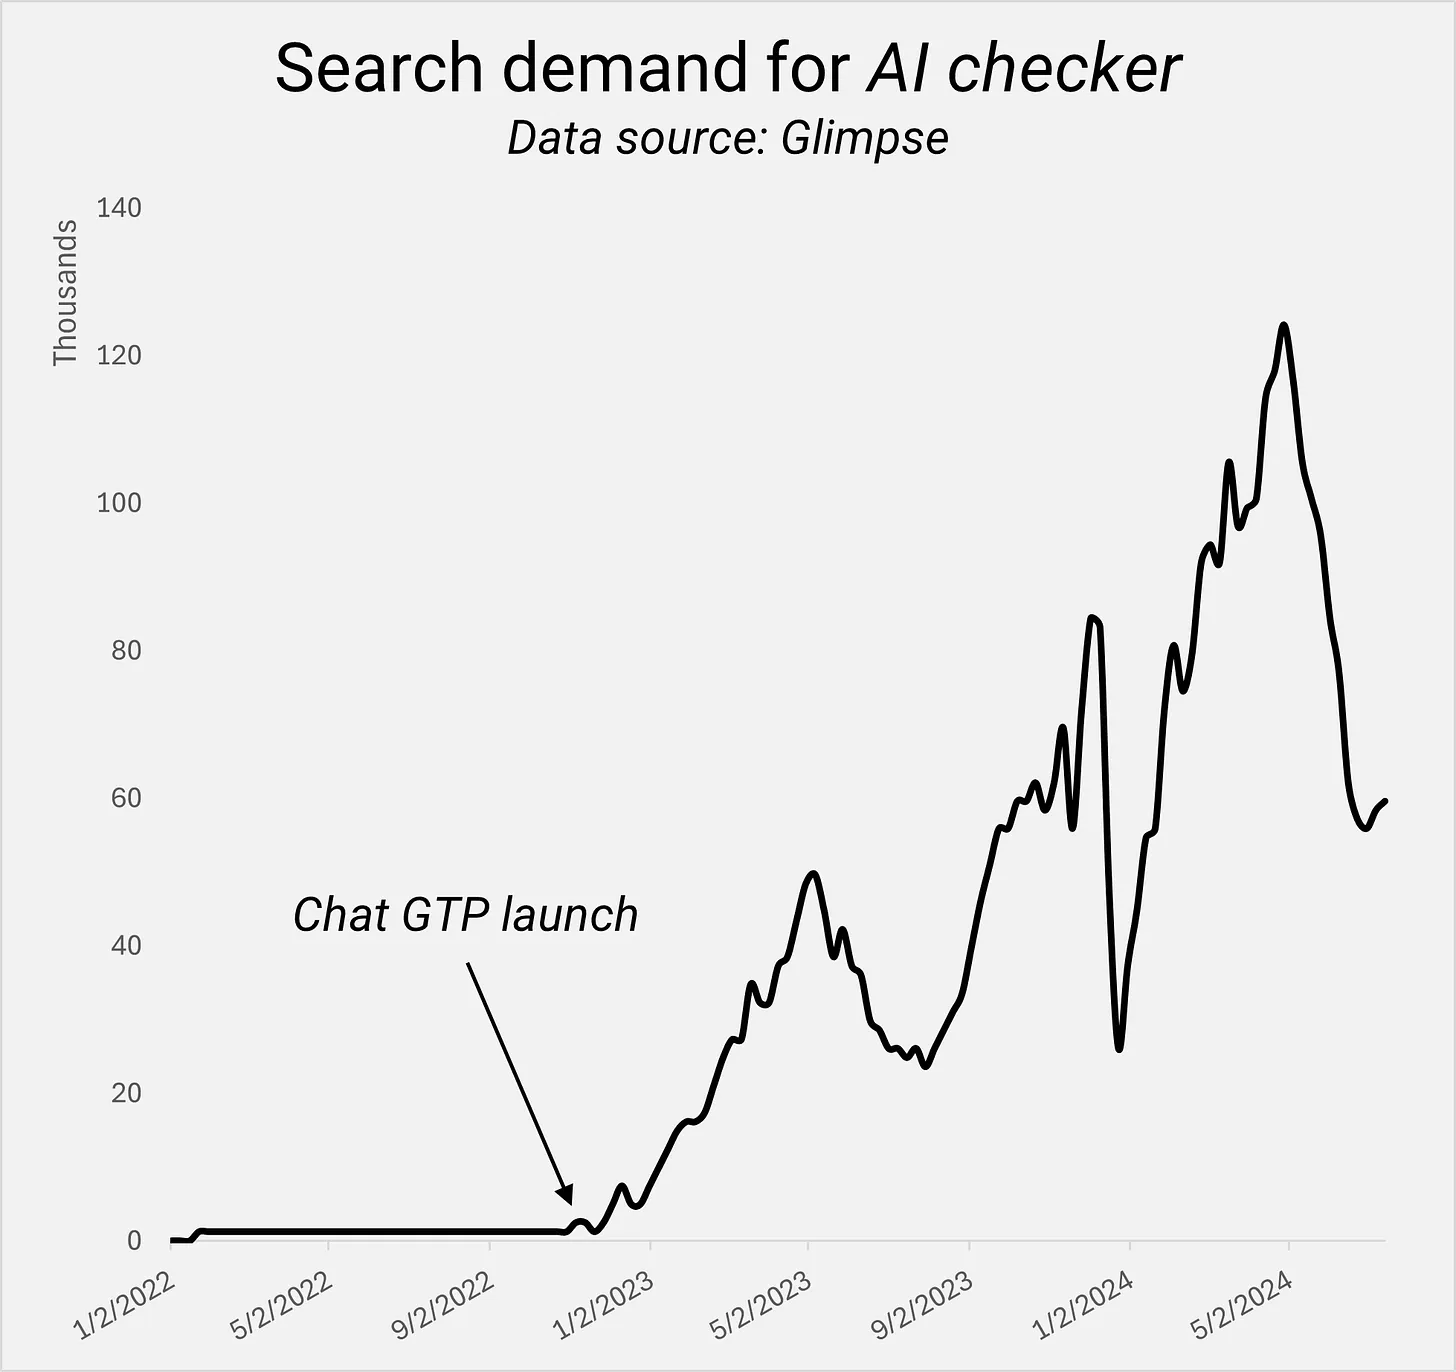 Search demand for AI checker